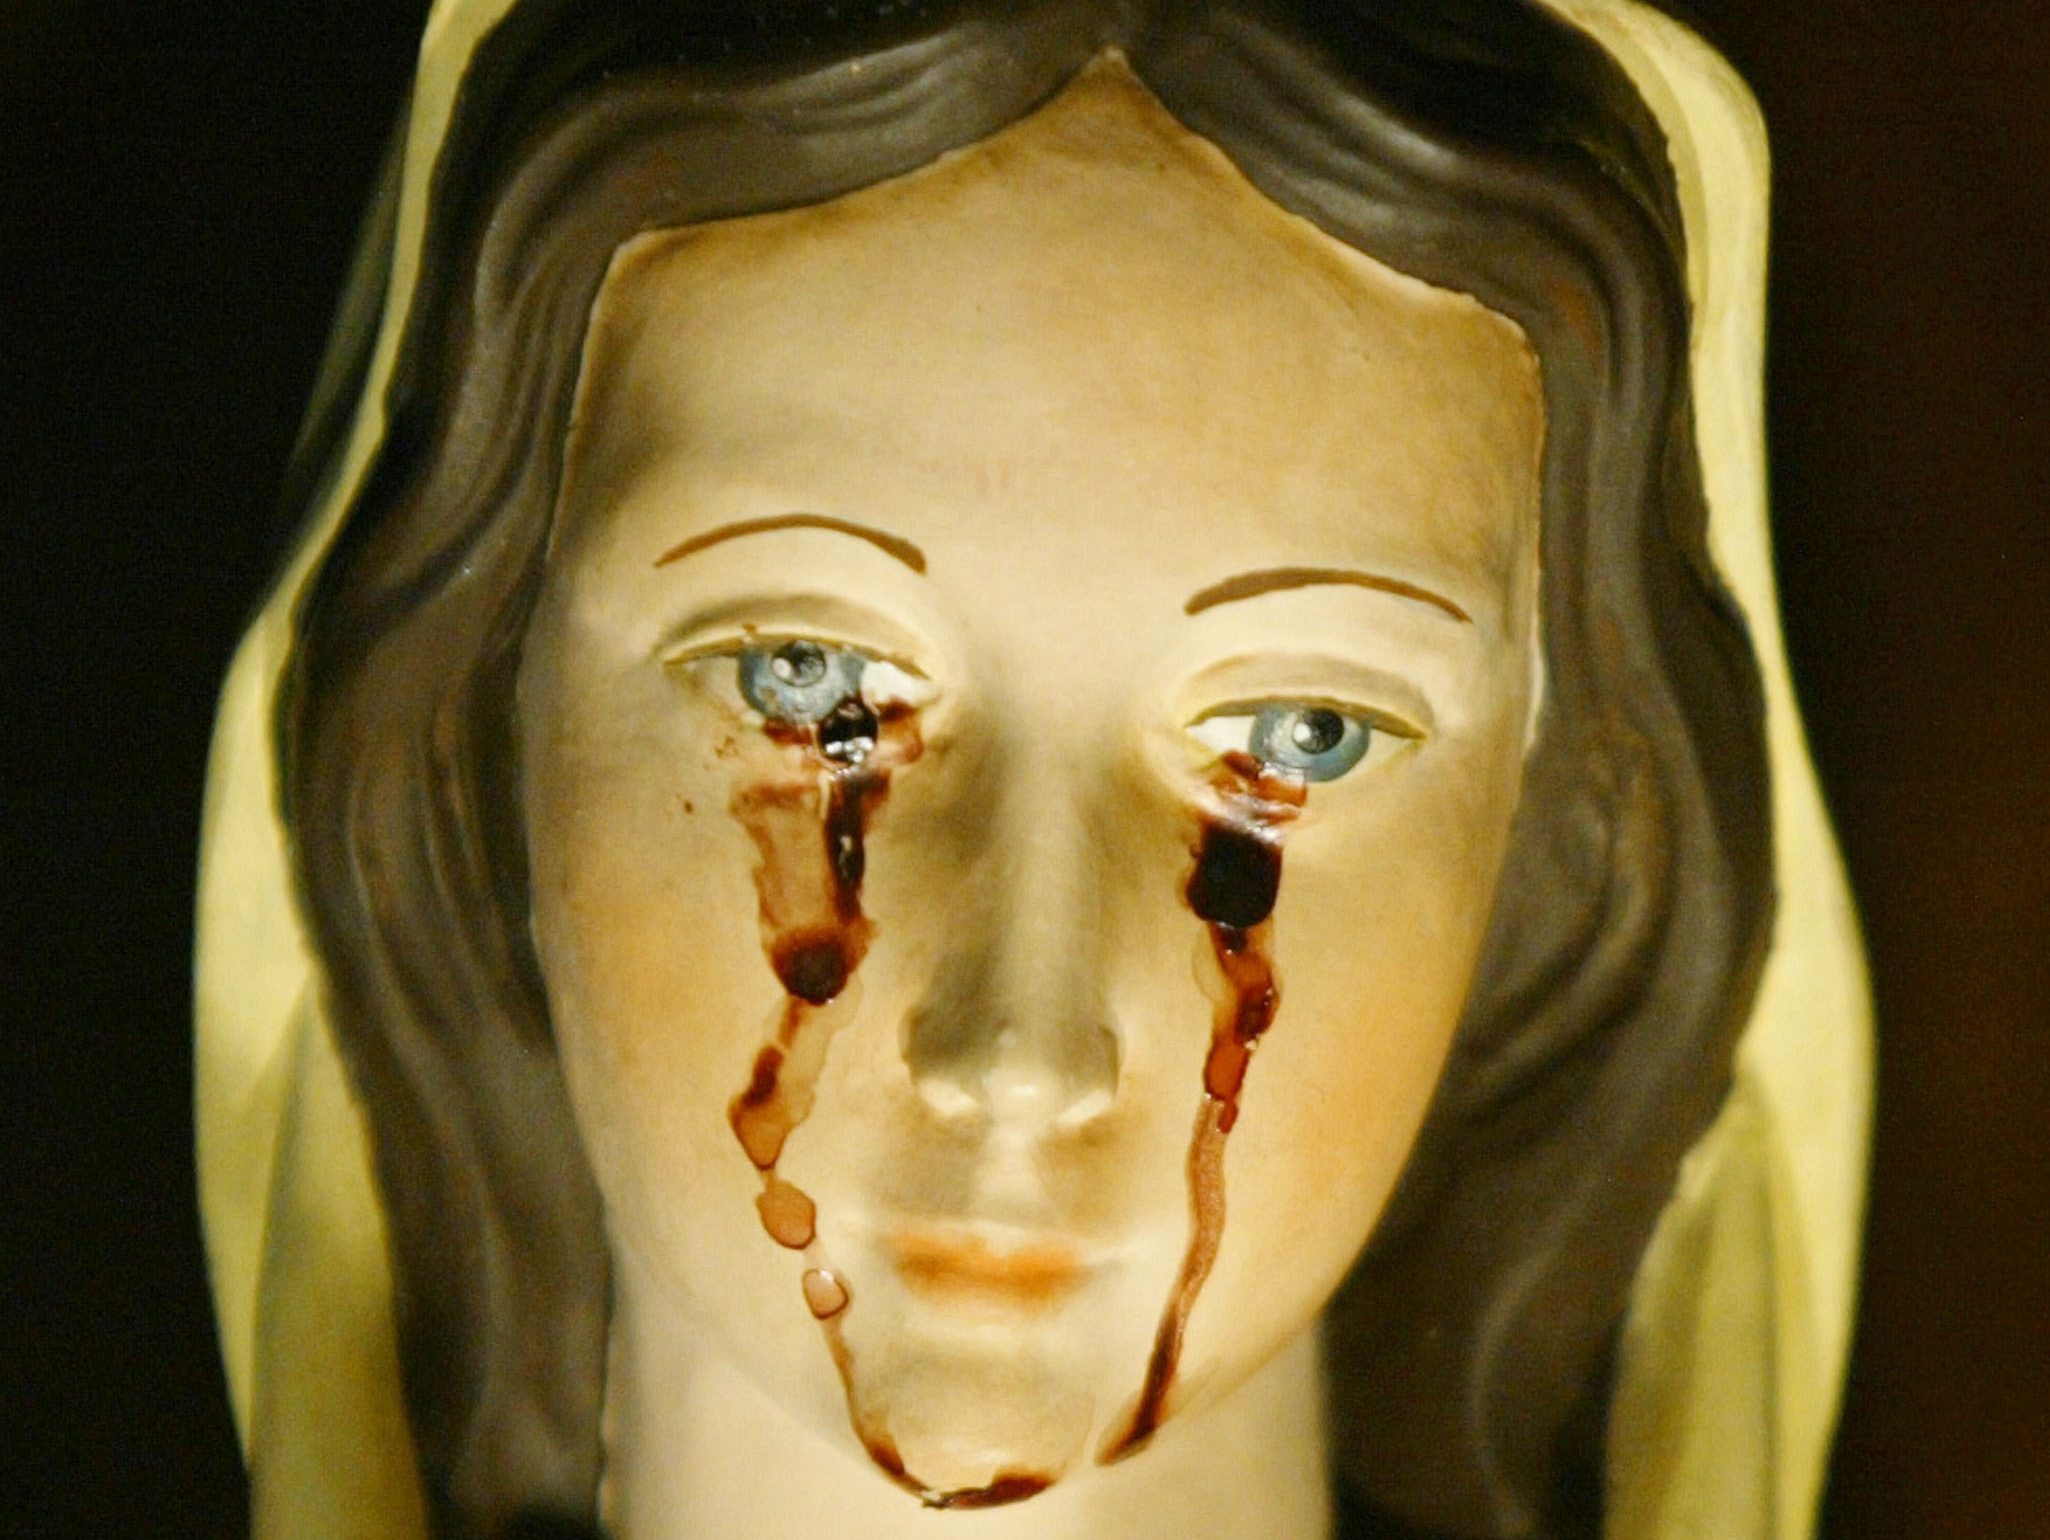 梵蒂岡宣佈新的規範以驗證如神視和流淚聖像等聲稱